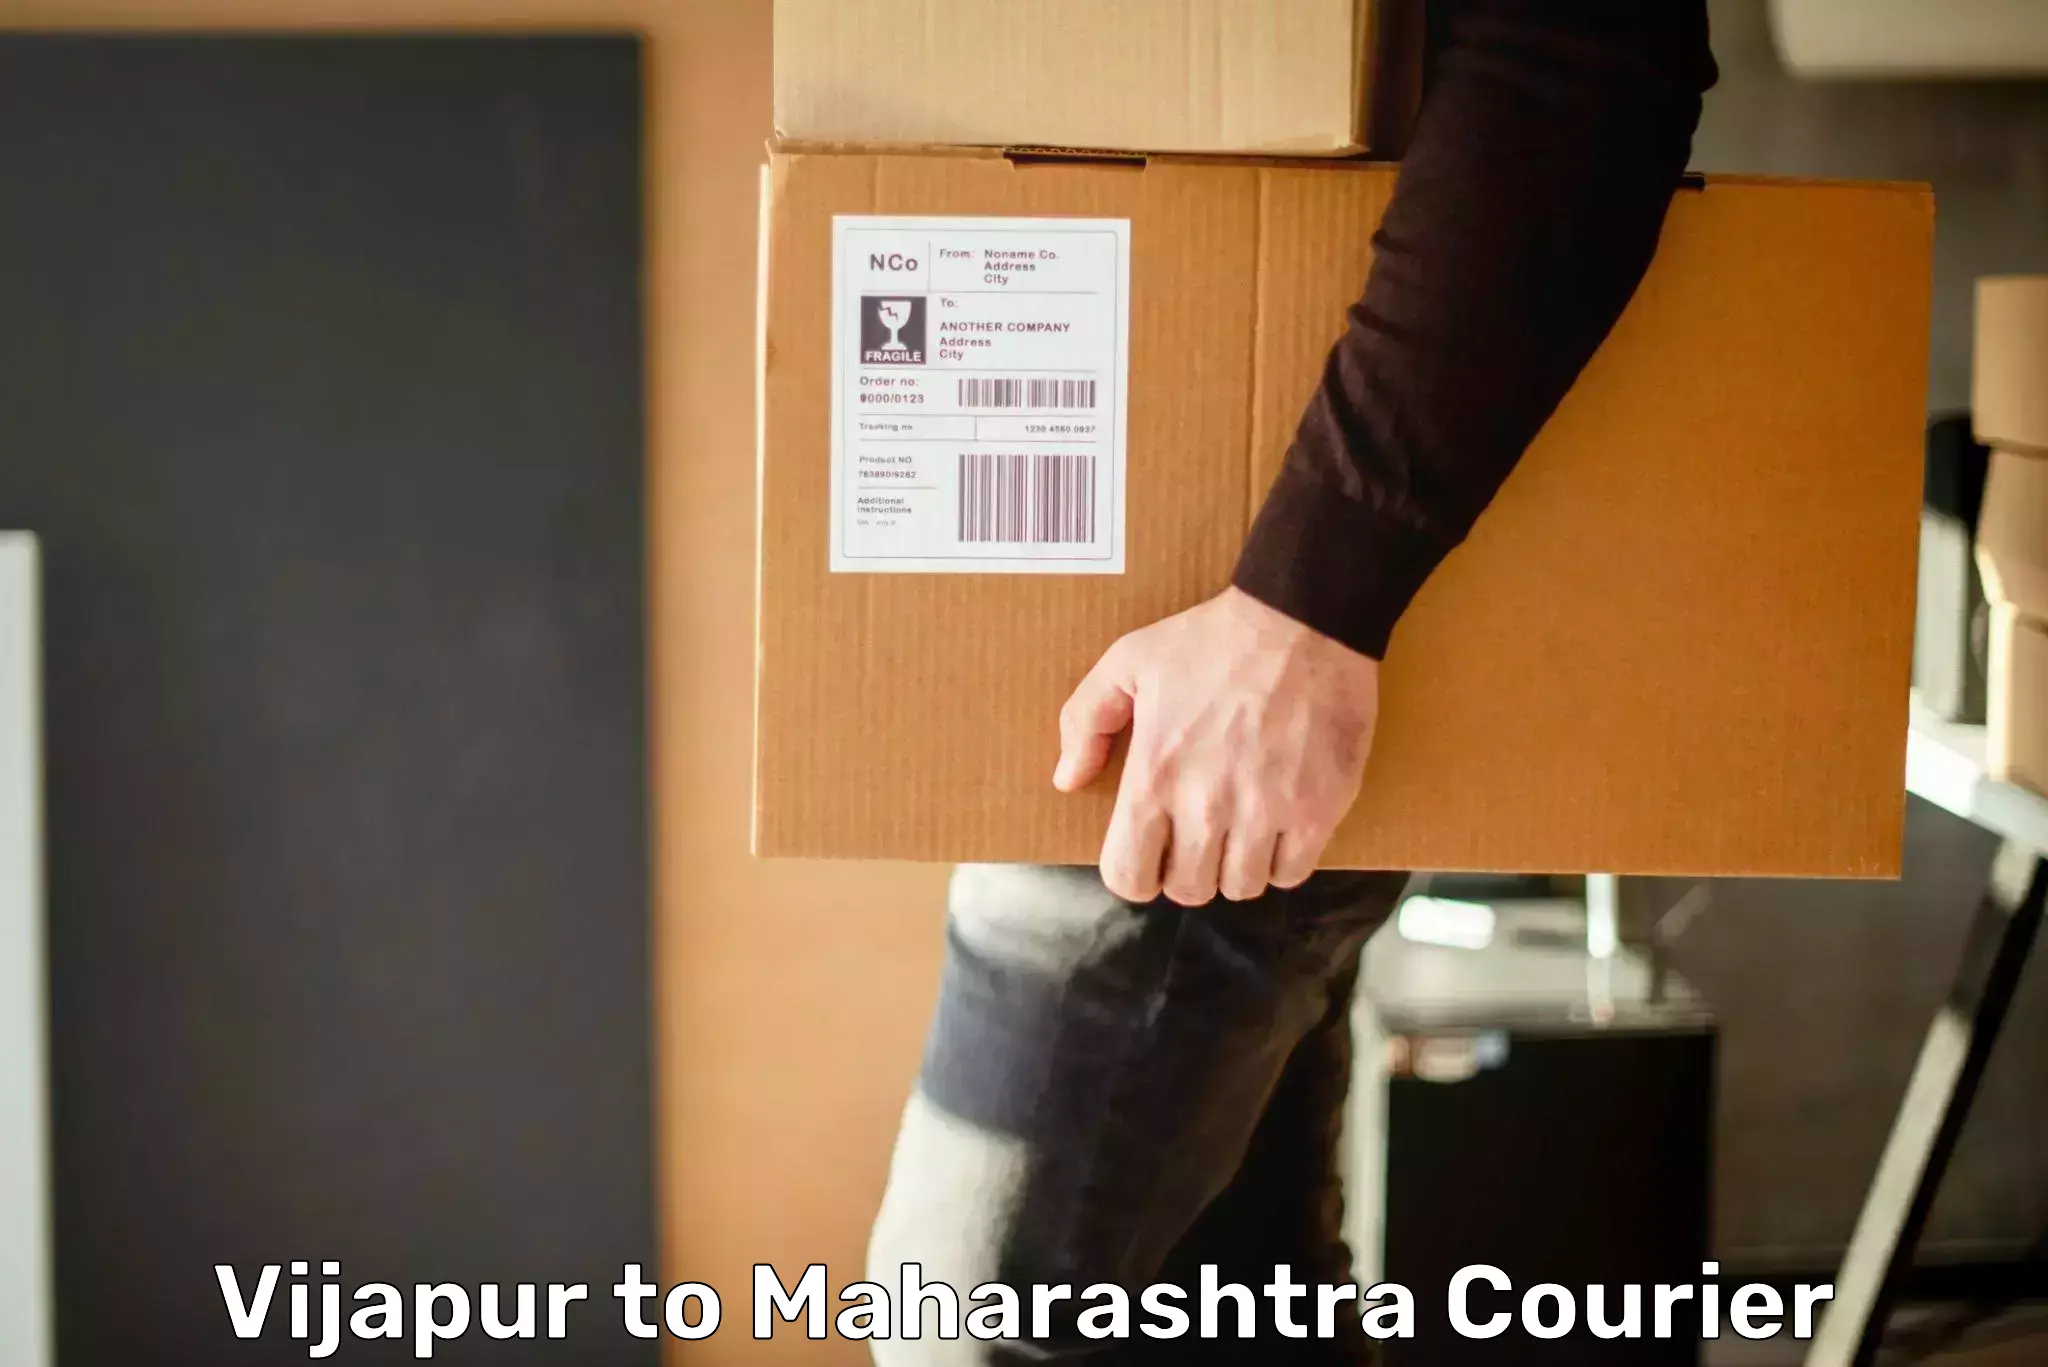 Next-generation courier services Vijapur to Shringartali